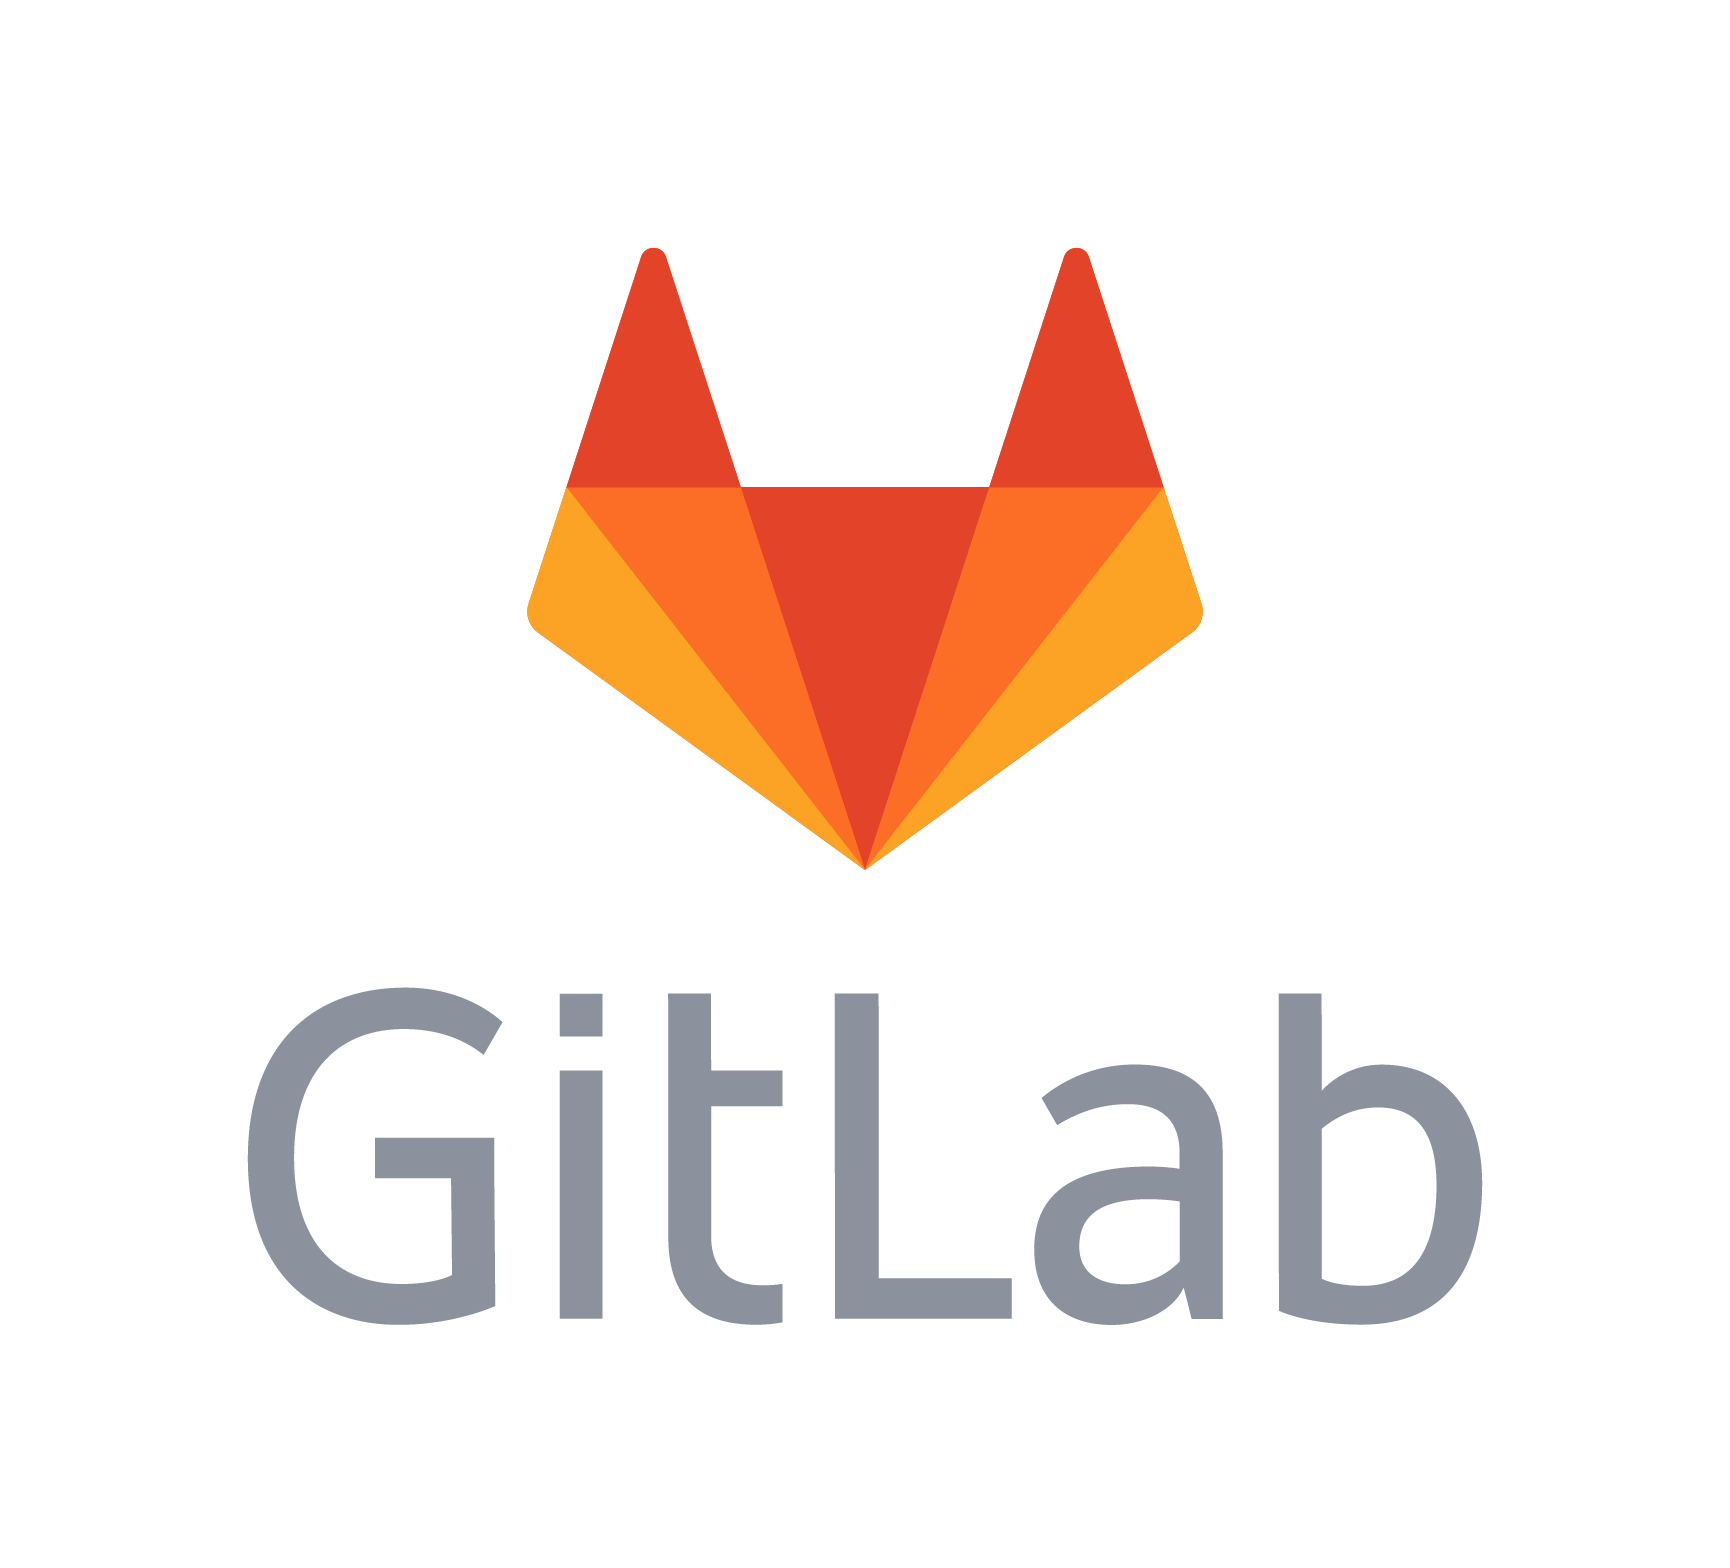 GitLab ha gli stessi problemi di sicurezza sui commenti di GitHub, ed una vecchia falla continua a mietere vittime